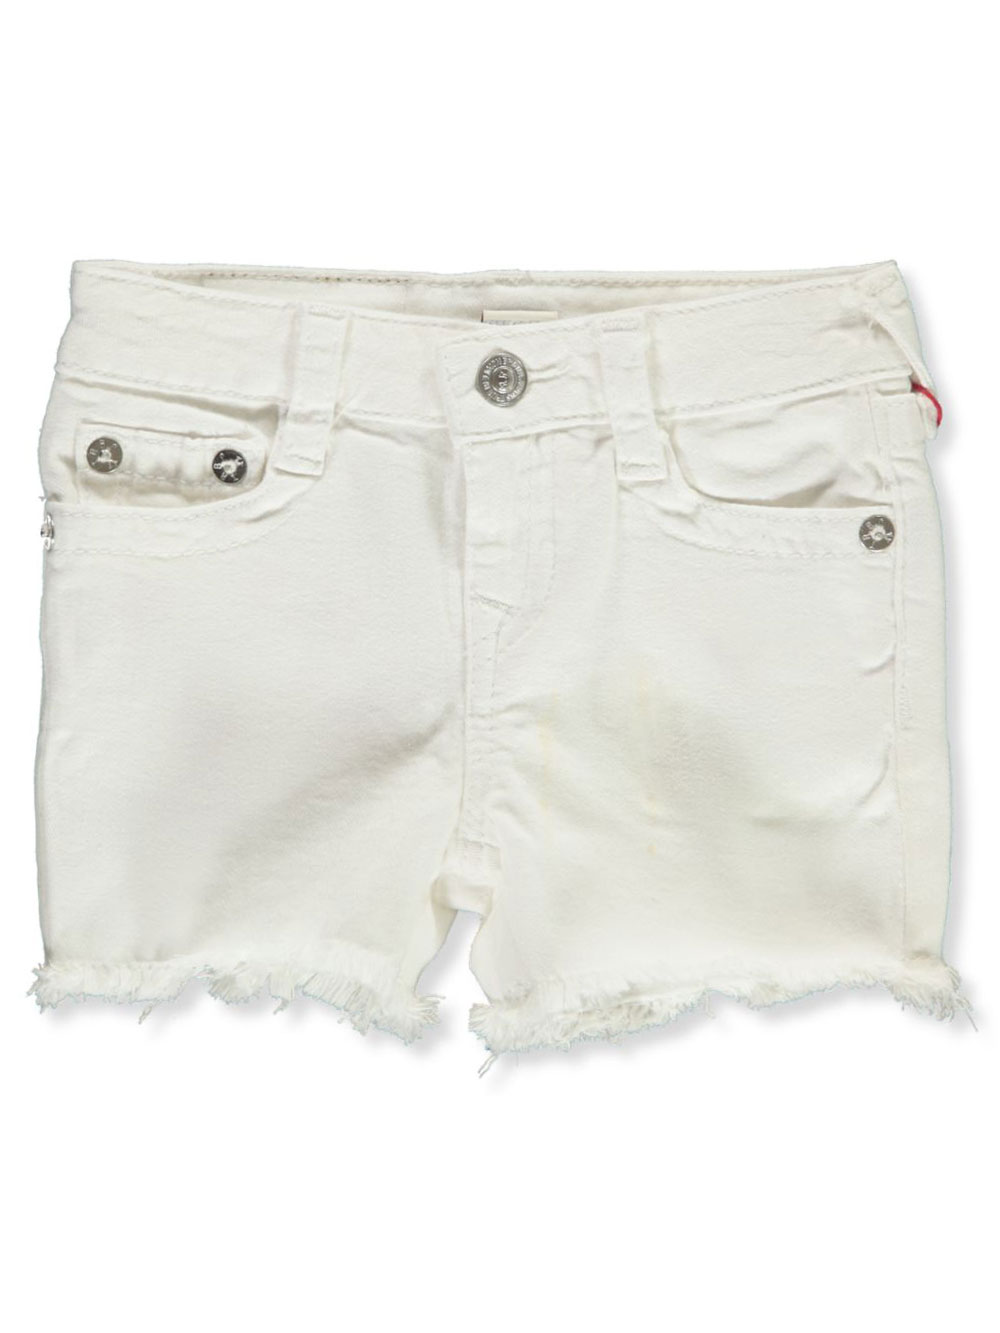 true religion girls shorts